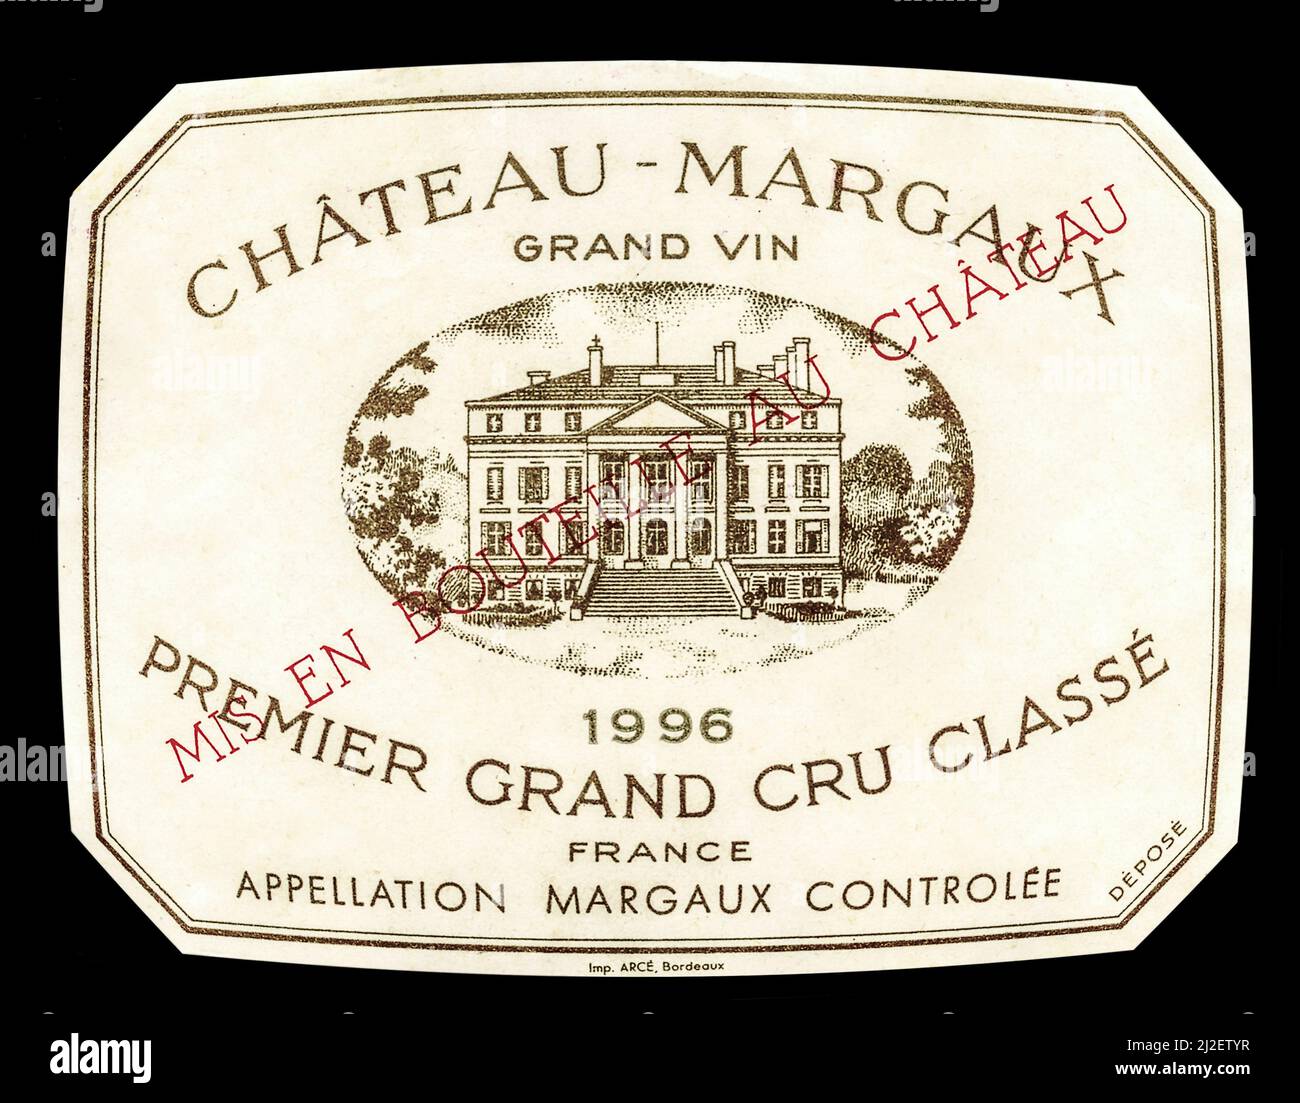 MARGAUX 1996 CHATEAU Weinflaschenetikett Chateau Margaux Premier Grand Cru classe GRAND VIN rot merlot Wein außergewöhnlich Jahr 1996 Gironde Bordeaux Frankreich APPELLATION MARGAUX CONTROLEE Stockfoto